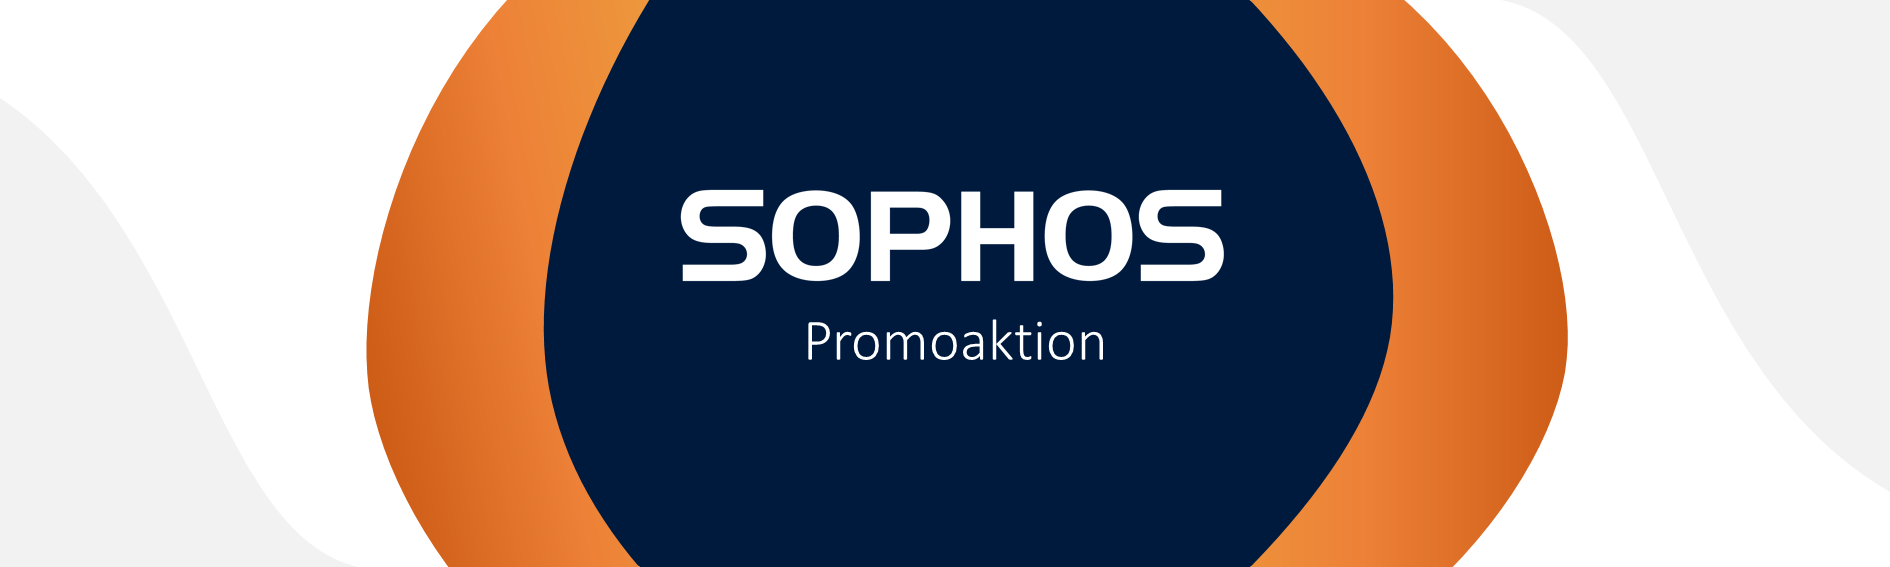 Sophos Promoaktionsbanner